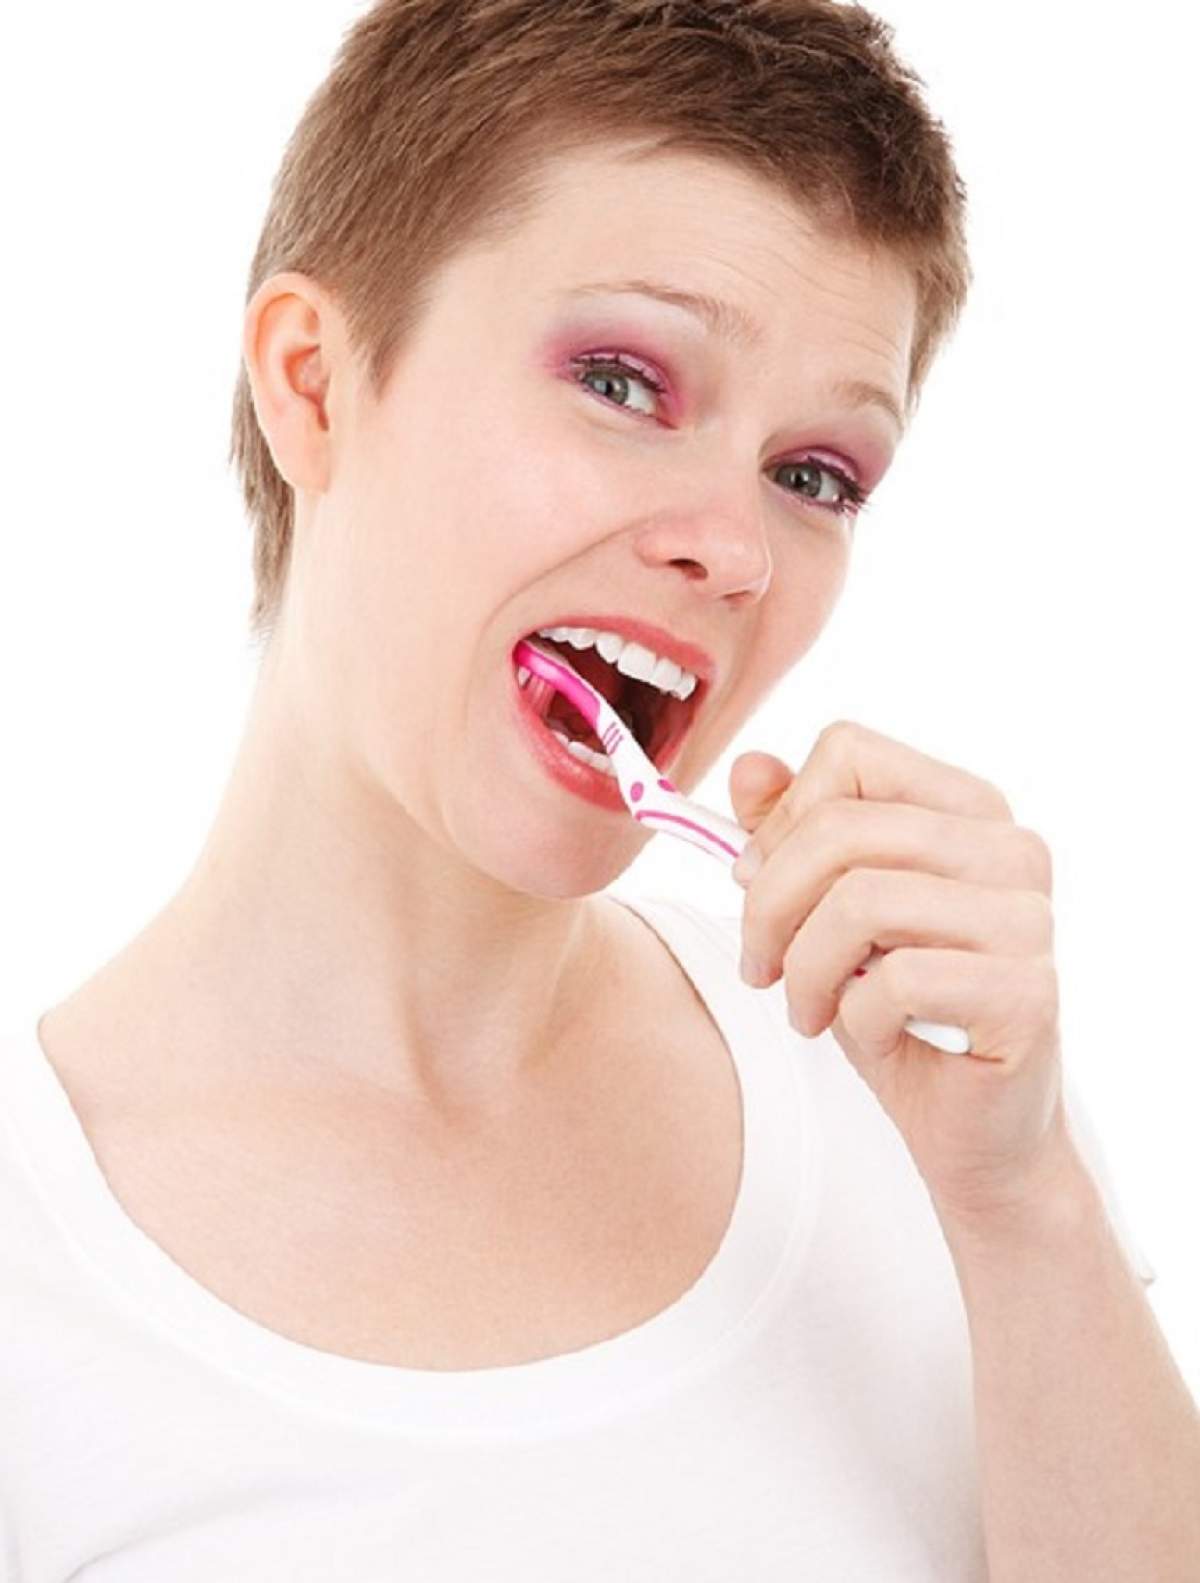 ÎNTREBAREA ZILEI: Care sunt pericolele ascunse din periuţa de dinţi? Ce se întâmplă, de fapt, când îţi sângerează gingia